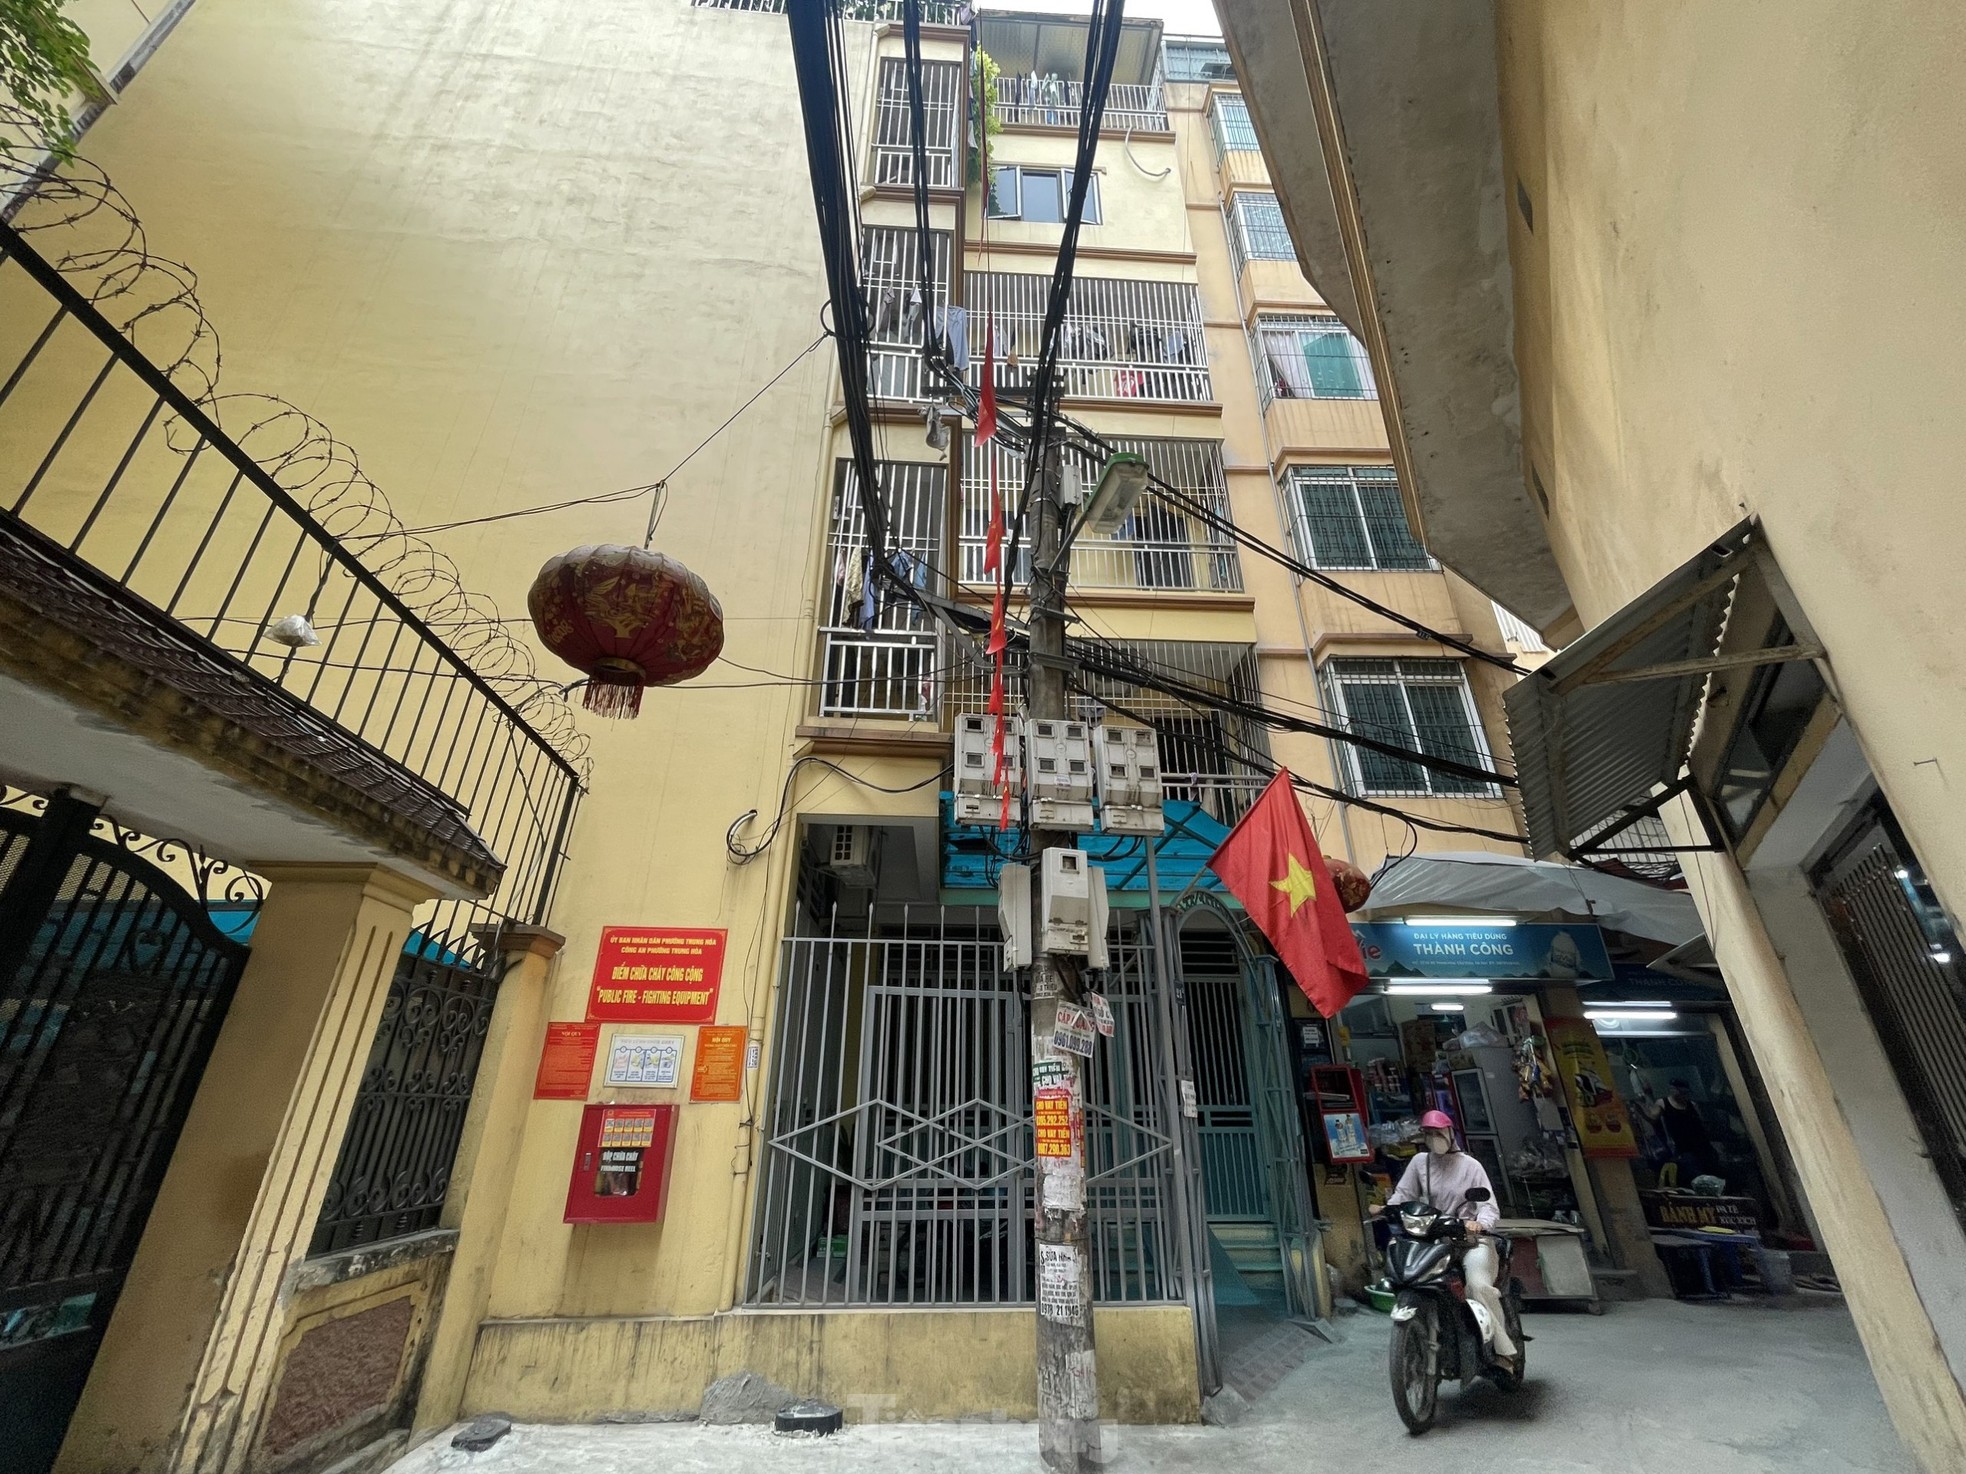 Nhà trọ, chung cư mini tràn lan không đảm bảo phòng cháy chữa cháy ở Hà Nội - Ảnh 6.